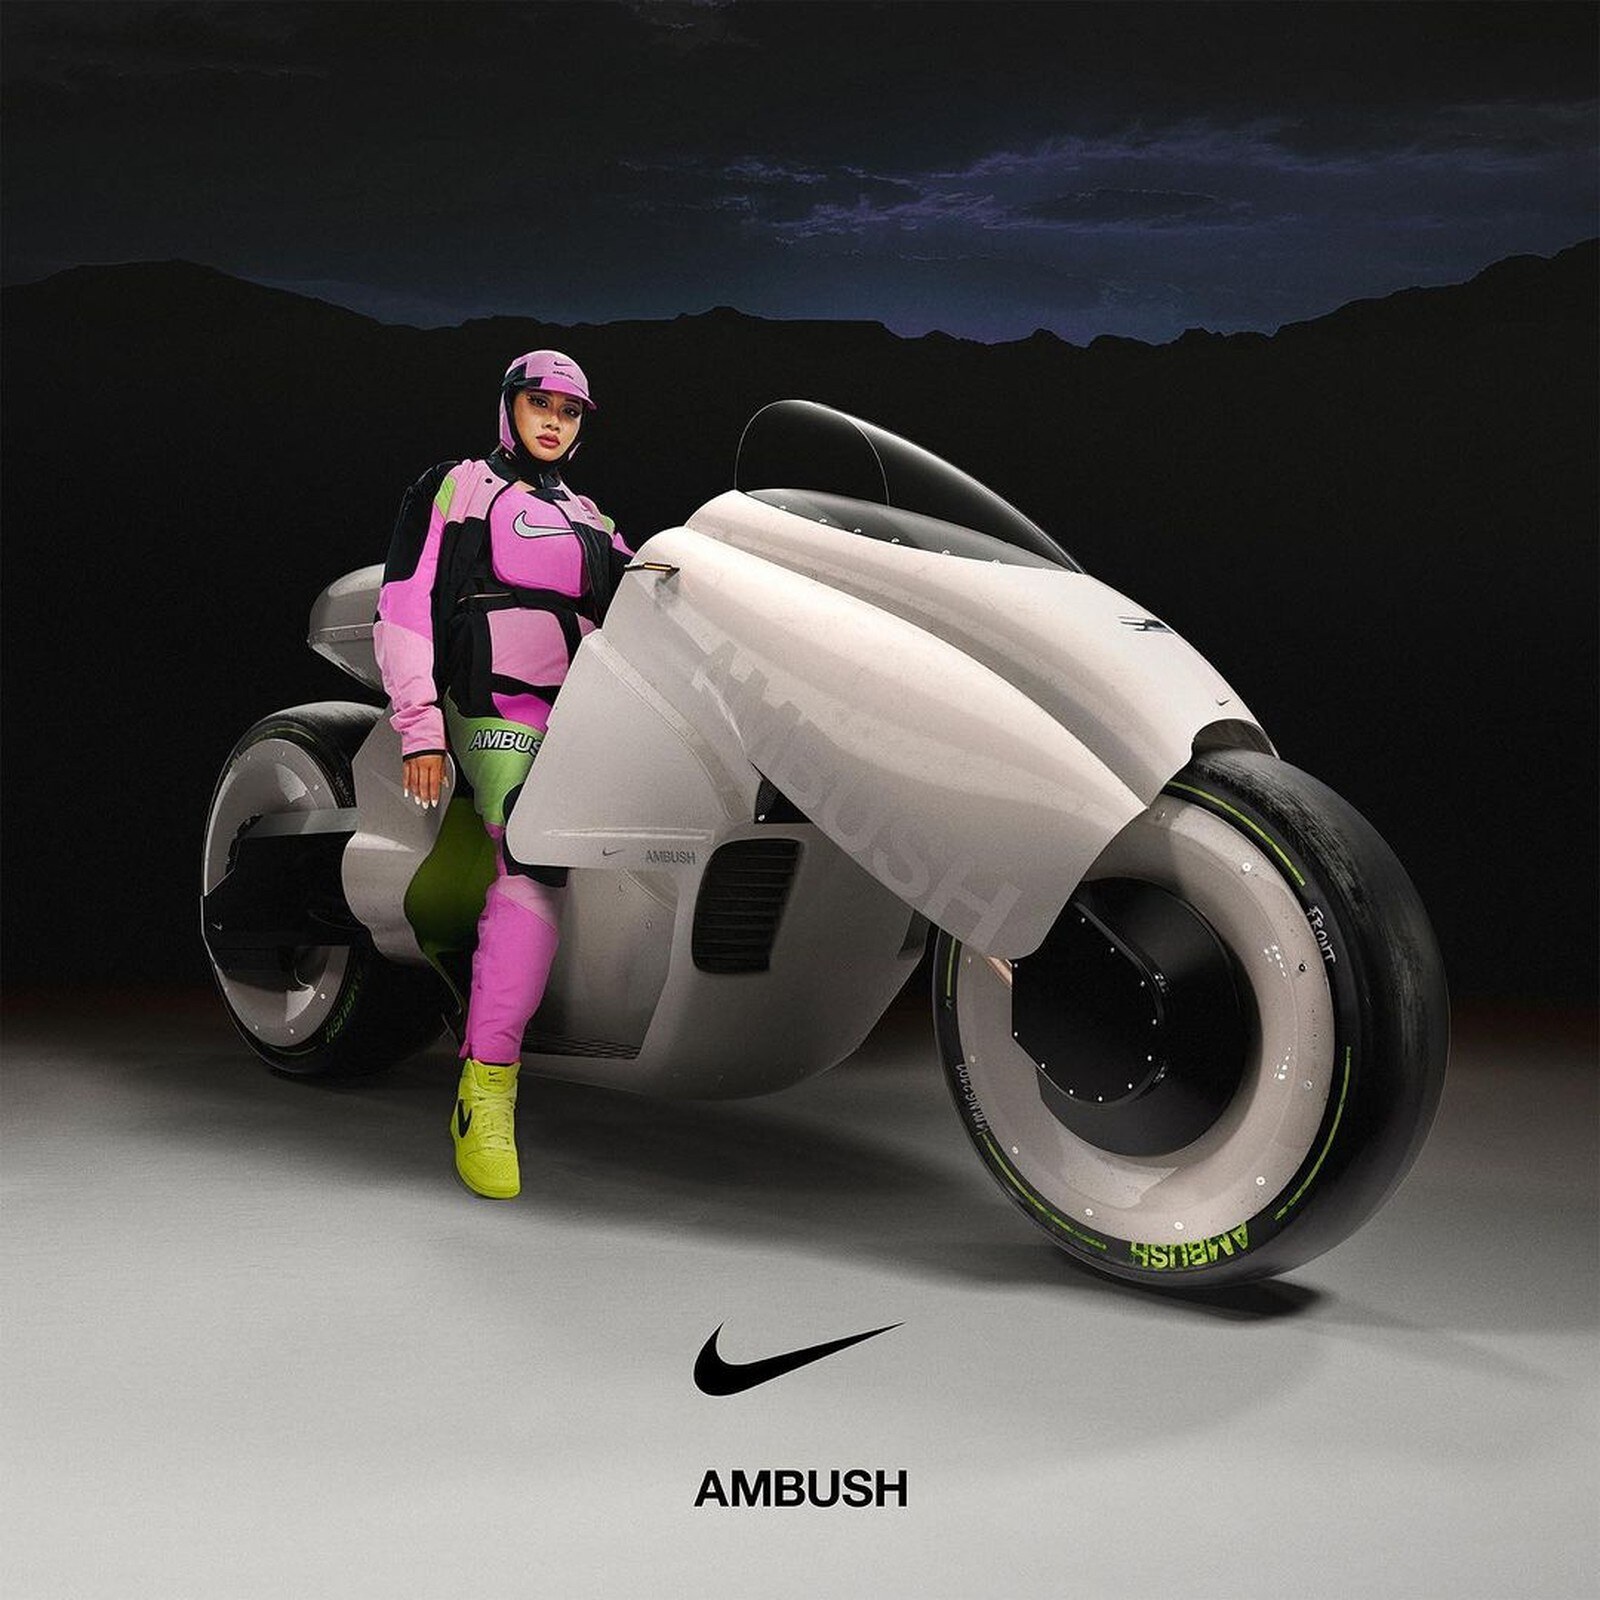 AMBUSH x Nike capsule collection